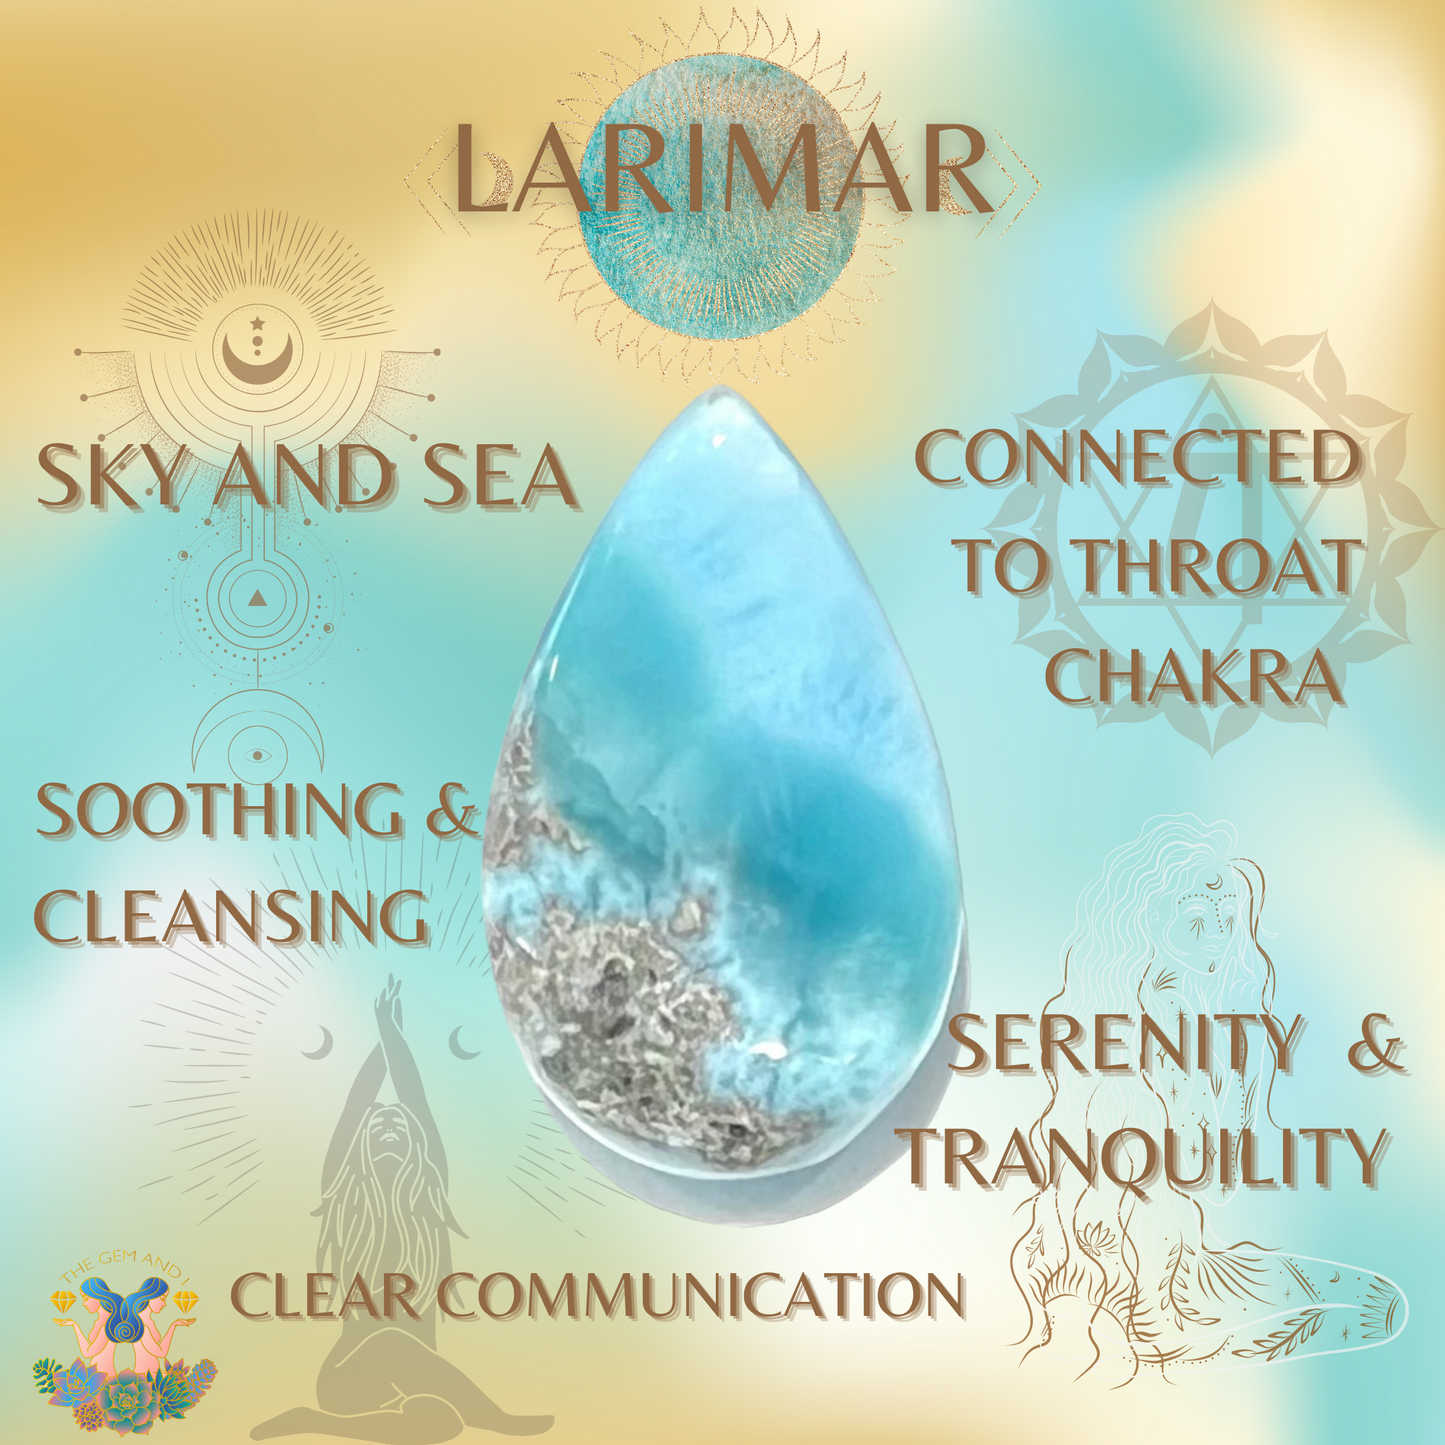 Properties of Larimar